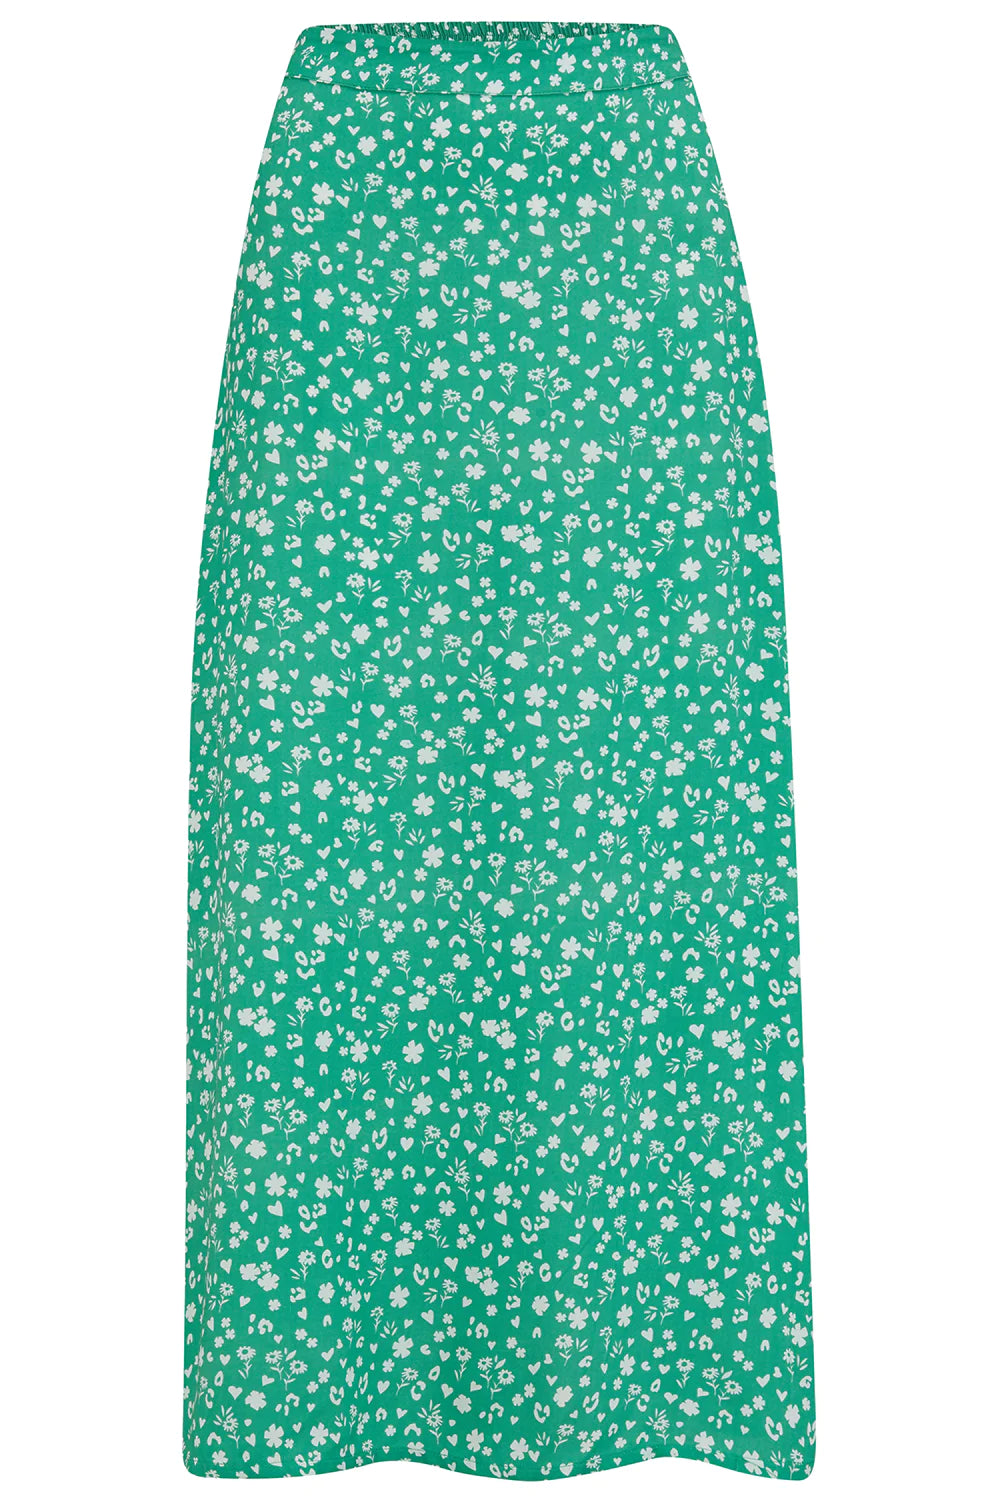 Zora Skirt (Green Scatter Print)